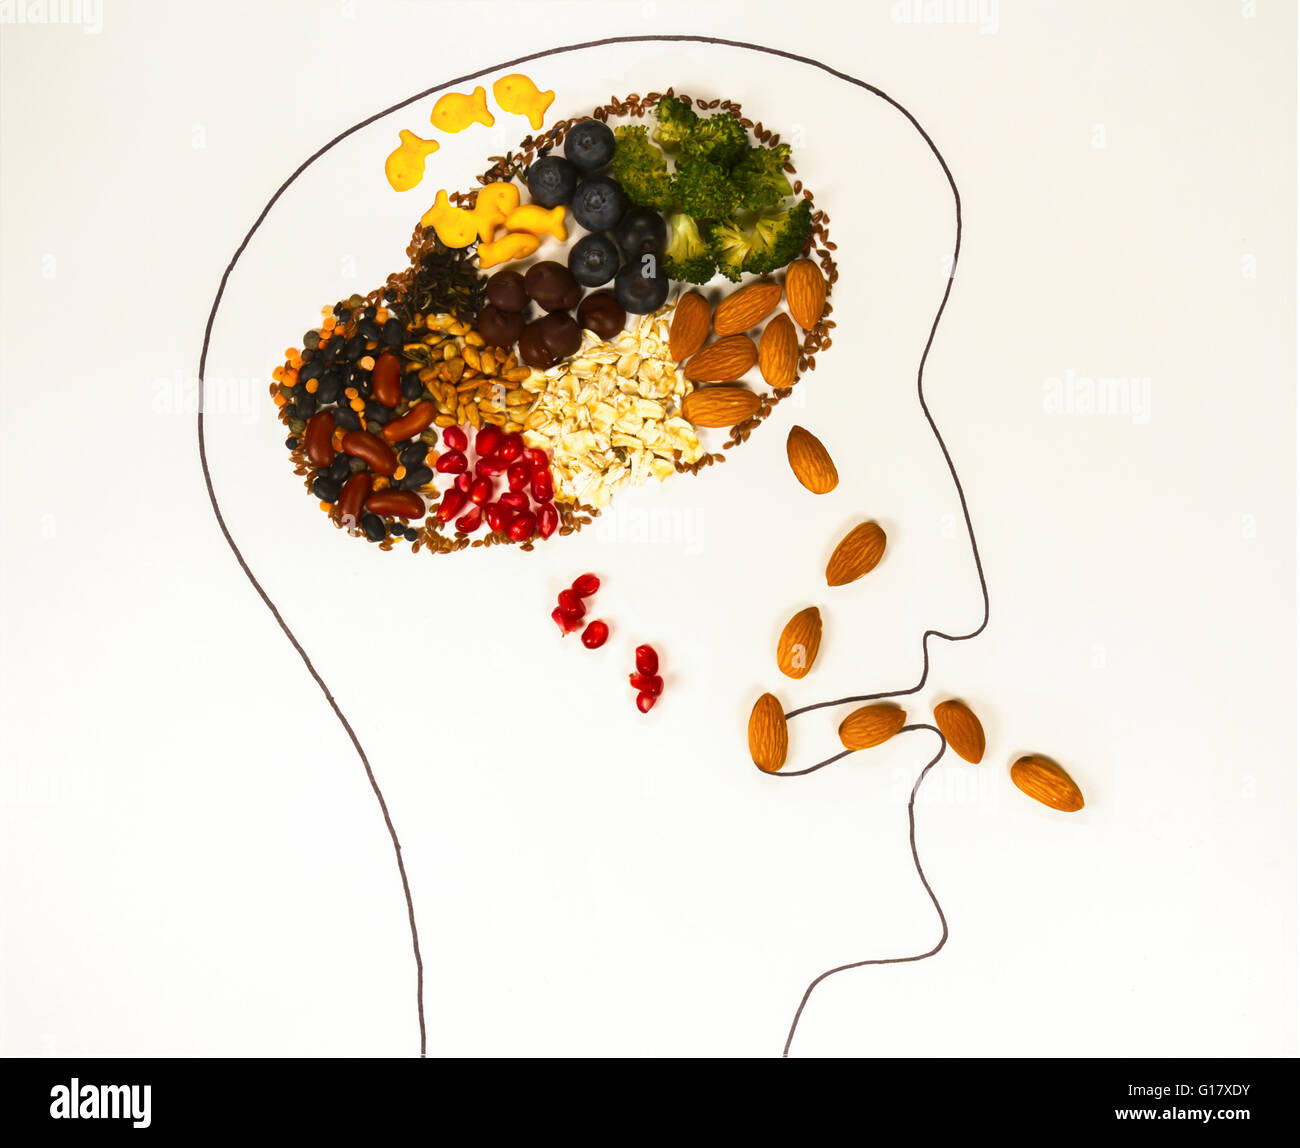 Il contorno di un cervello umano essendo alimentato gli alimenti ricchi di antiossidanti che si ritiene contribuiscano a mantenere la salute del cervello e migliorare la memoria Foto Stock